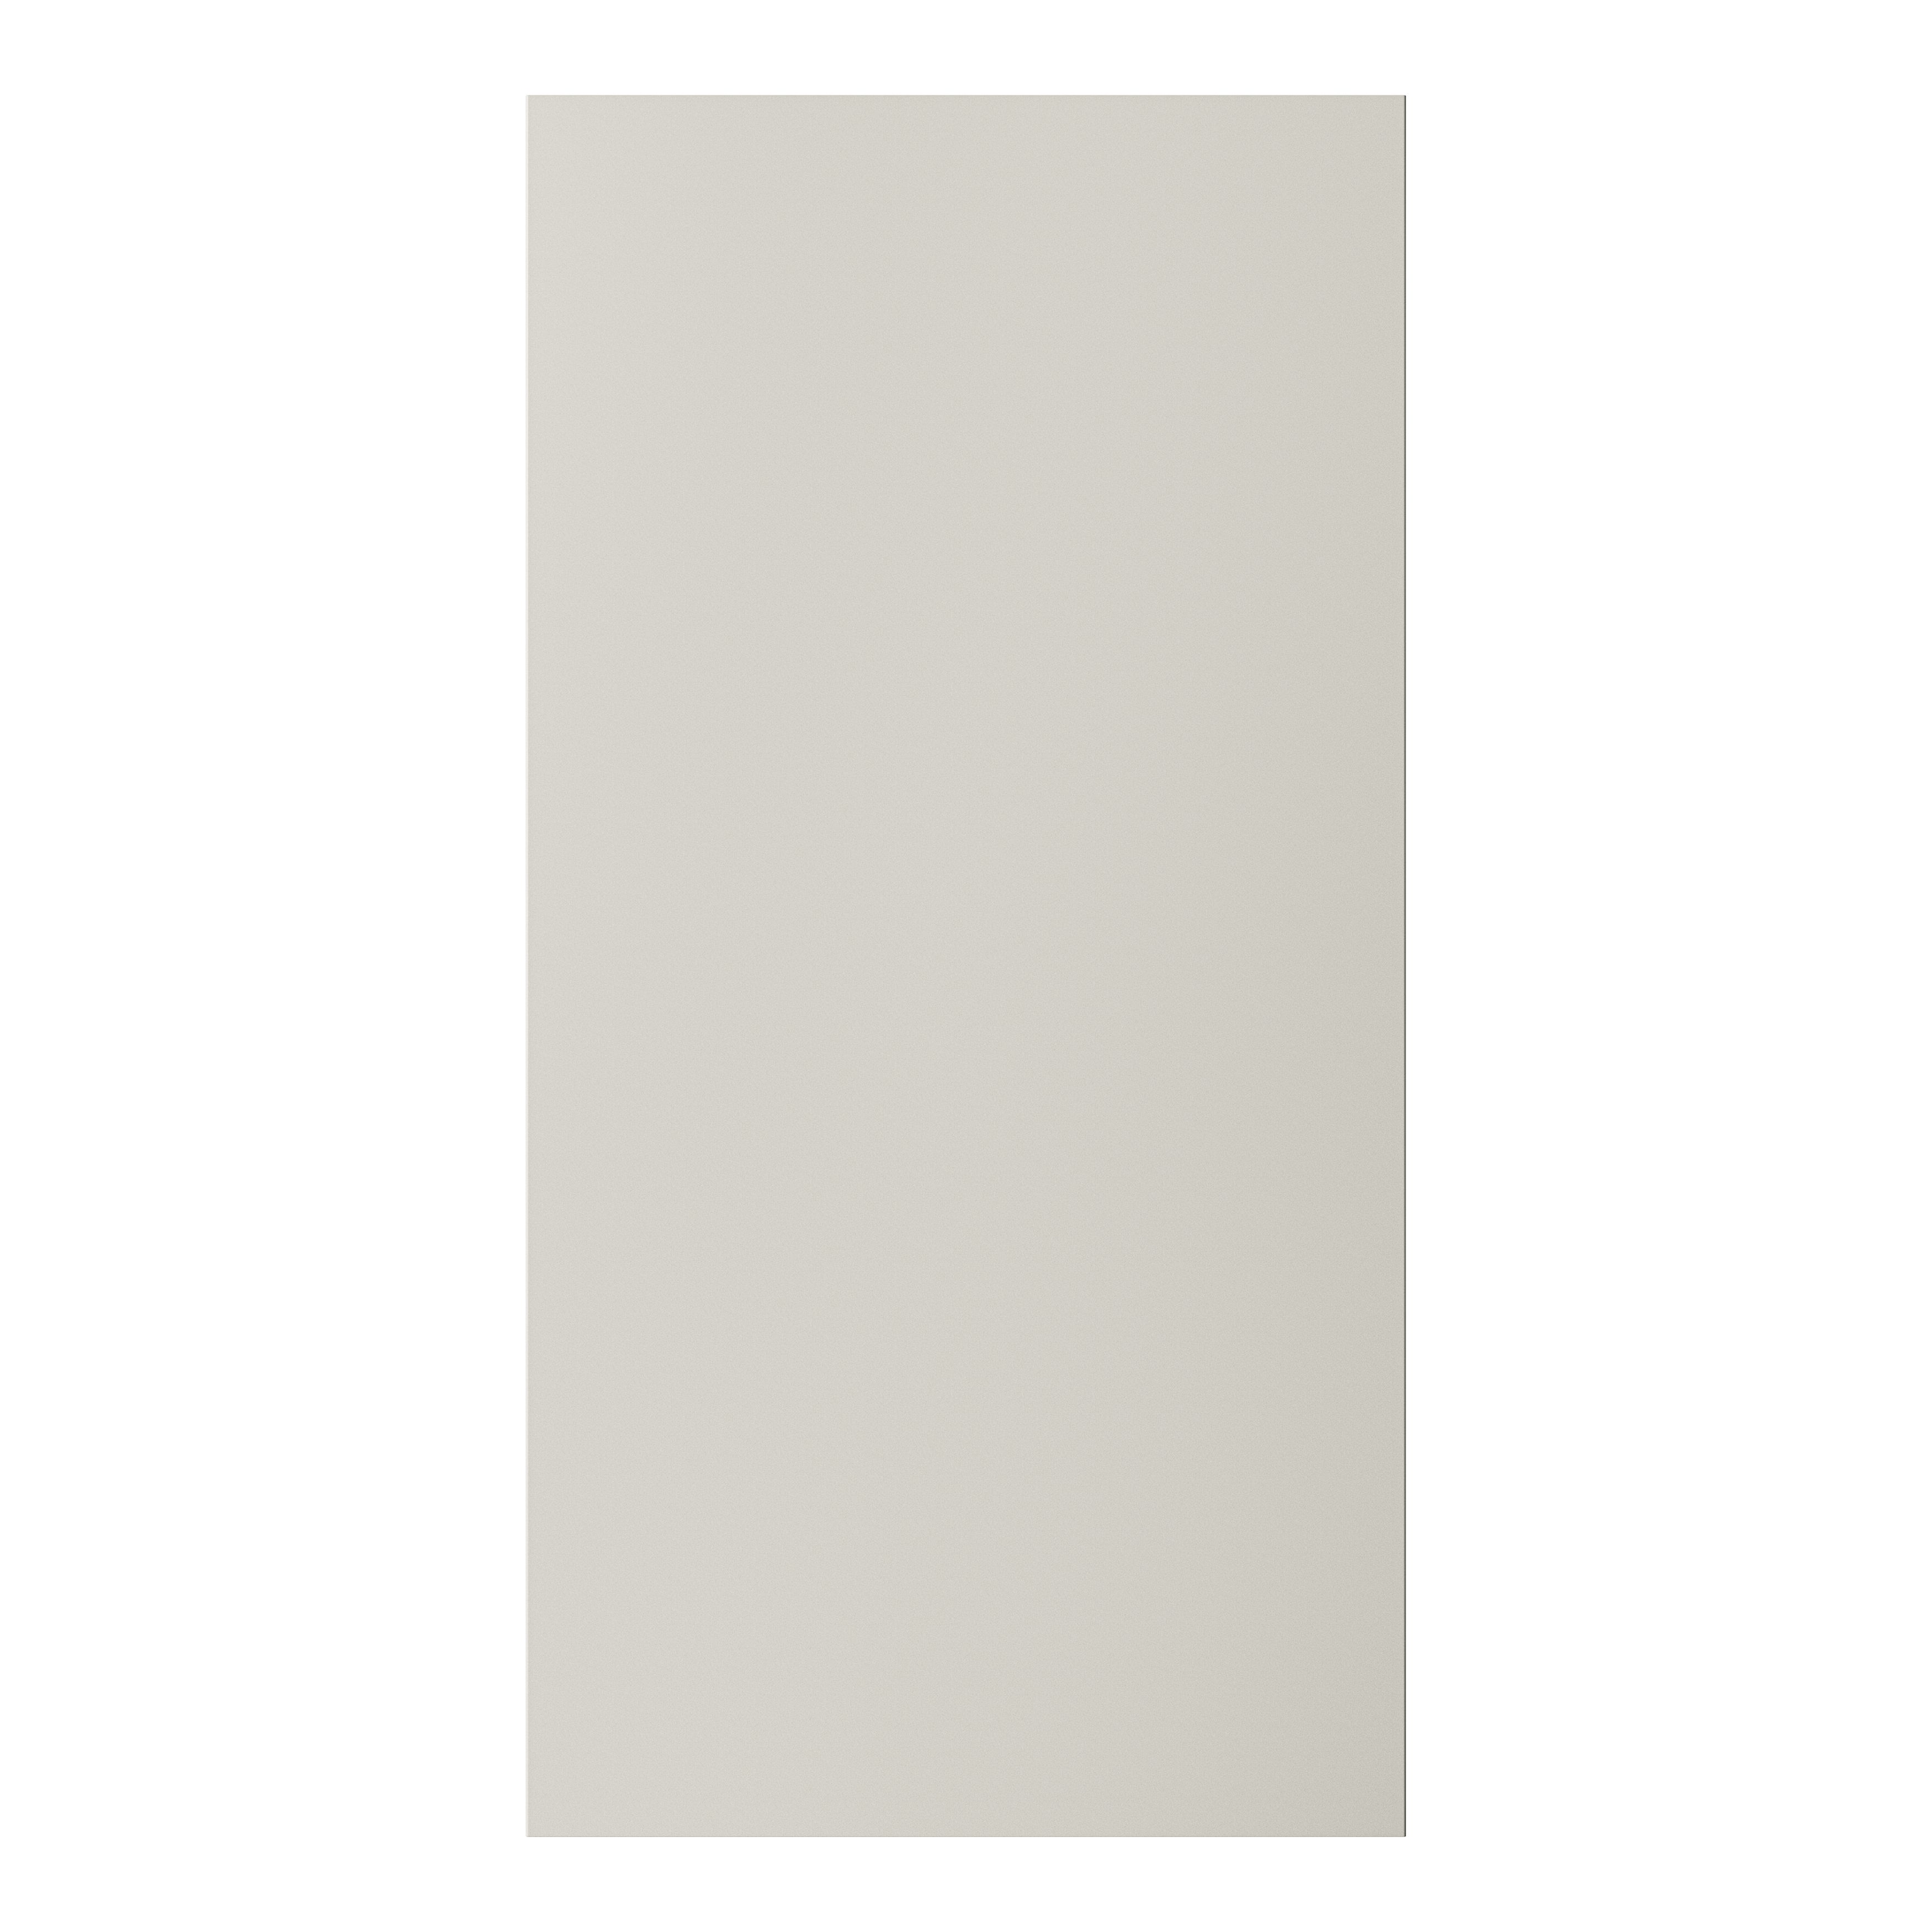 GoodHome Stevia Matt sandstone slab 50:50 Tall larder Cabinet door (W)600mm (H)1181mm (T)18mm